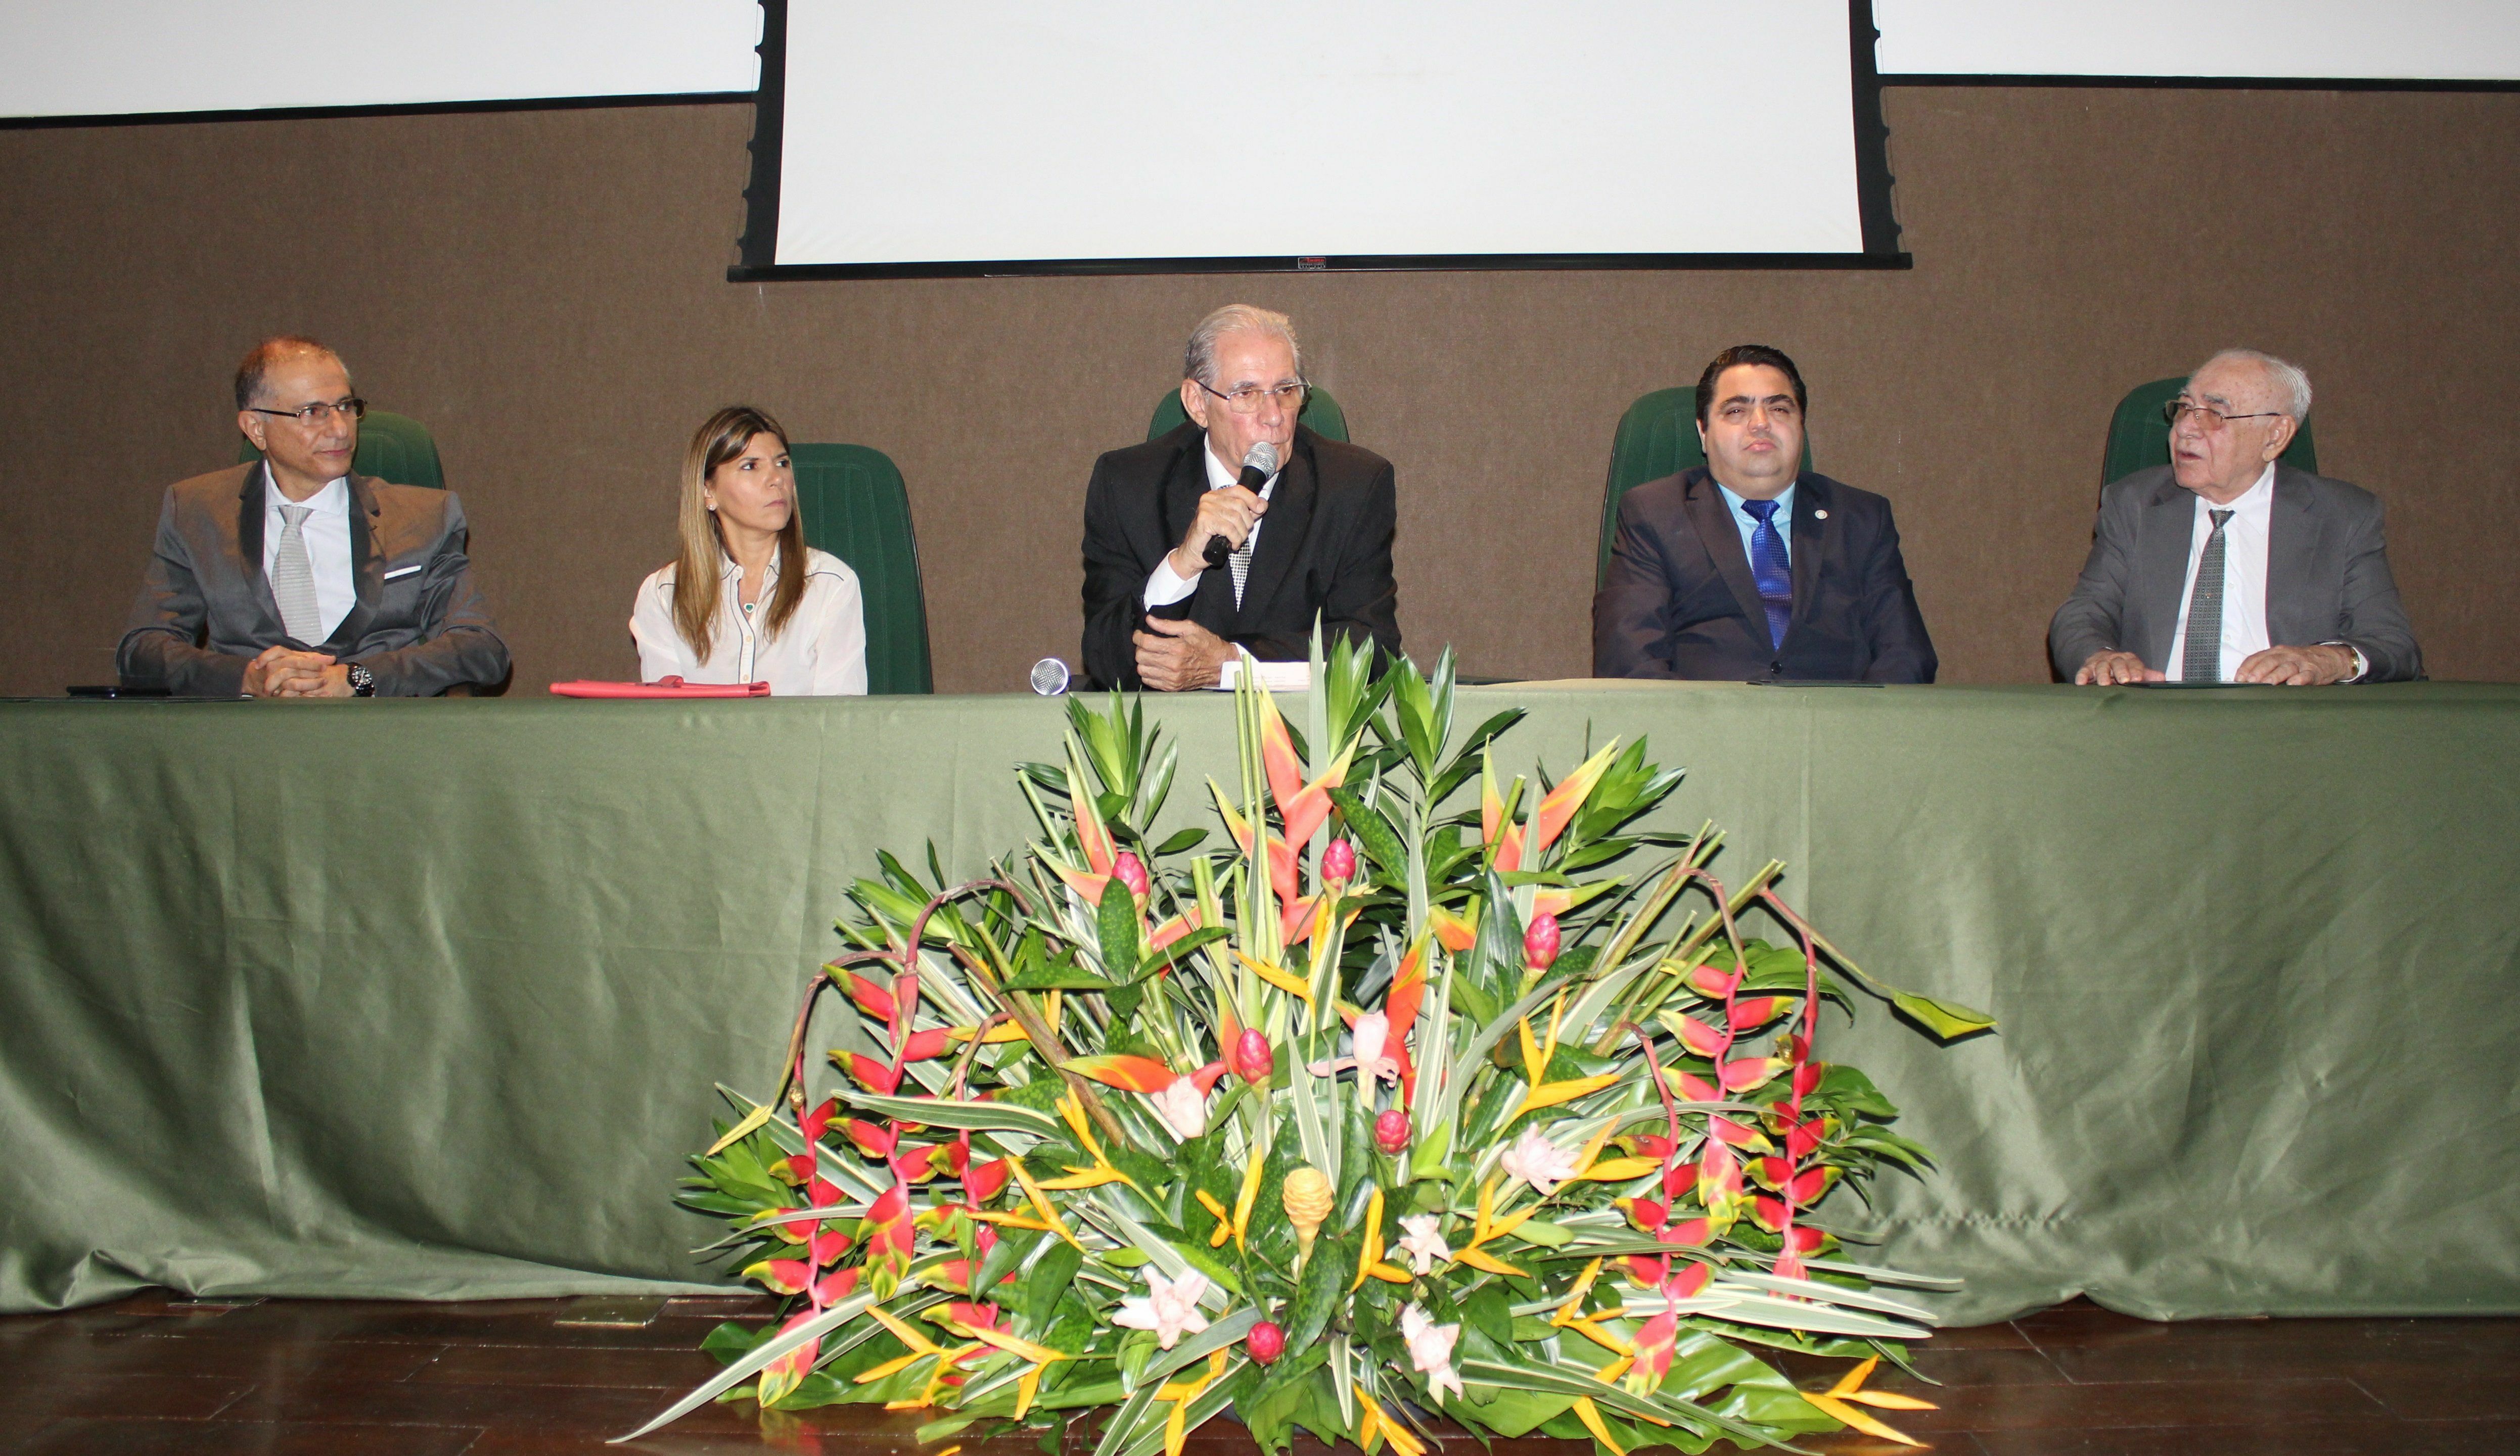 Doutor José Bernardes Sobrinho iniciou seu terceiro mandato de presidente do Conselho